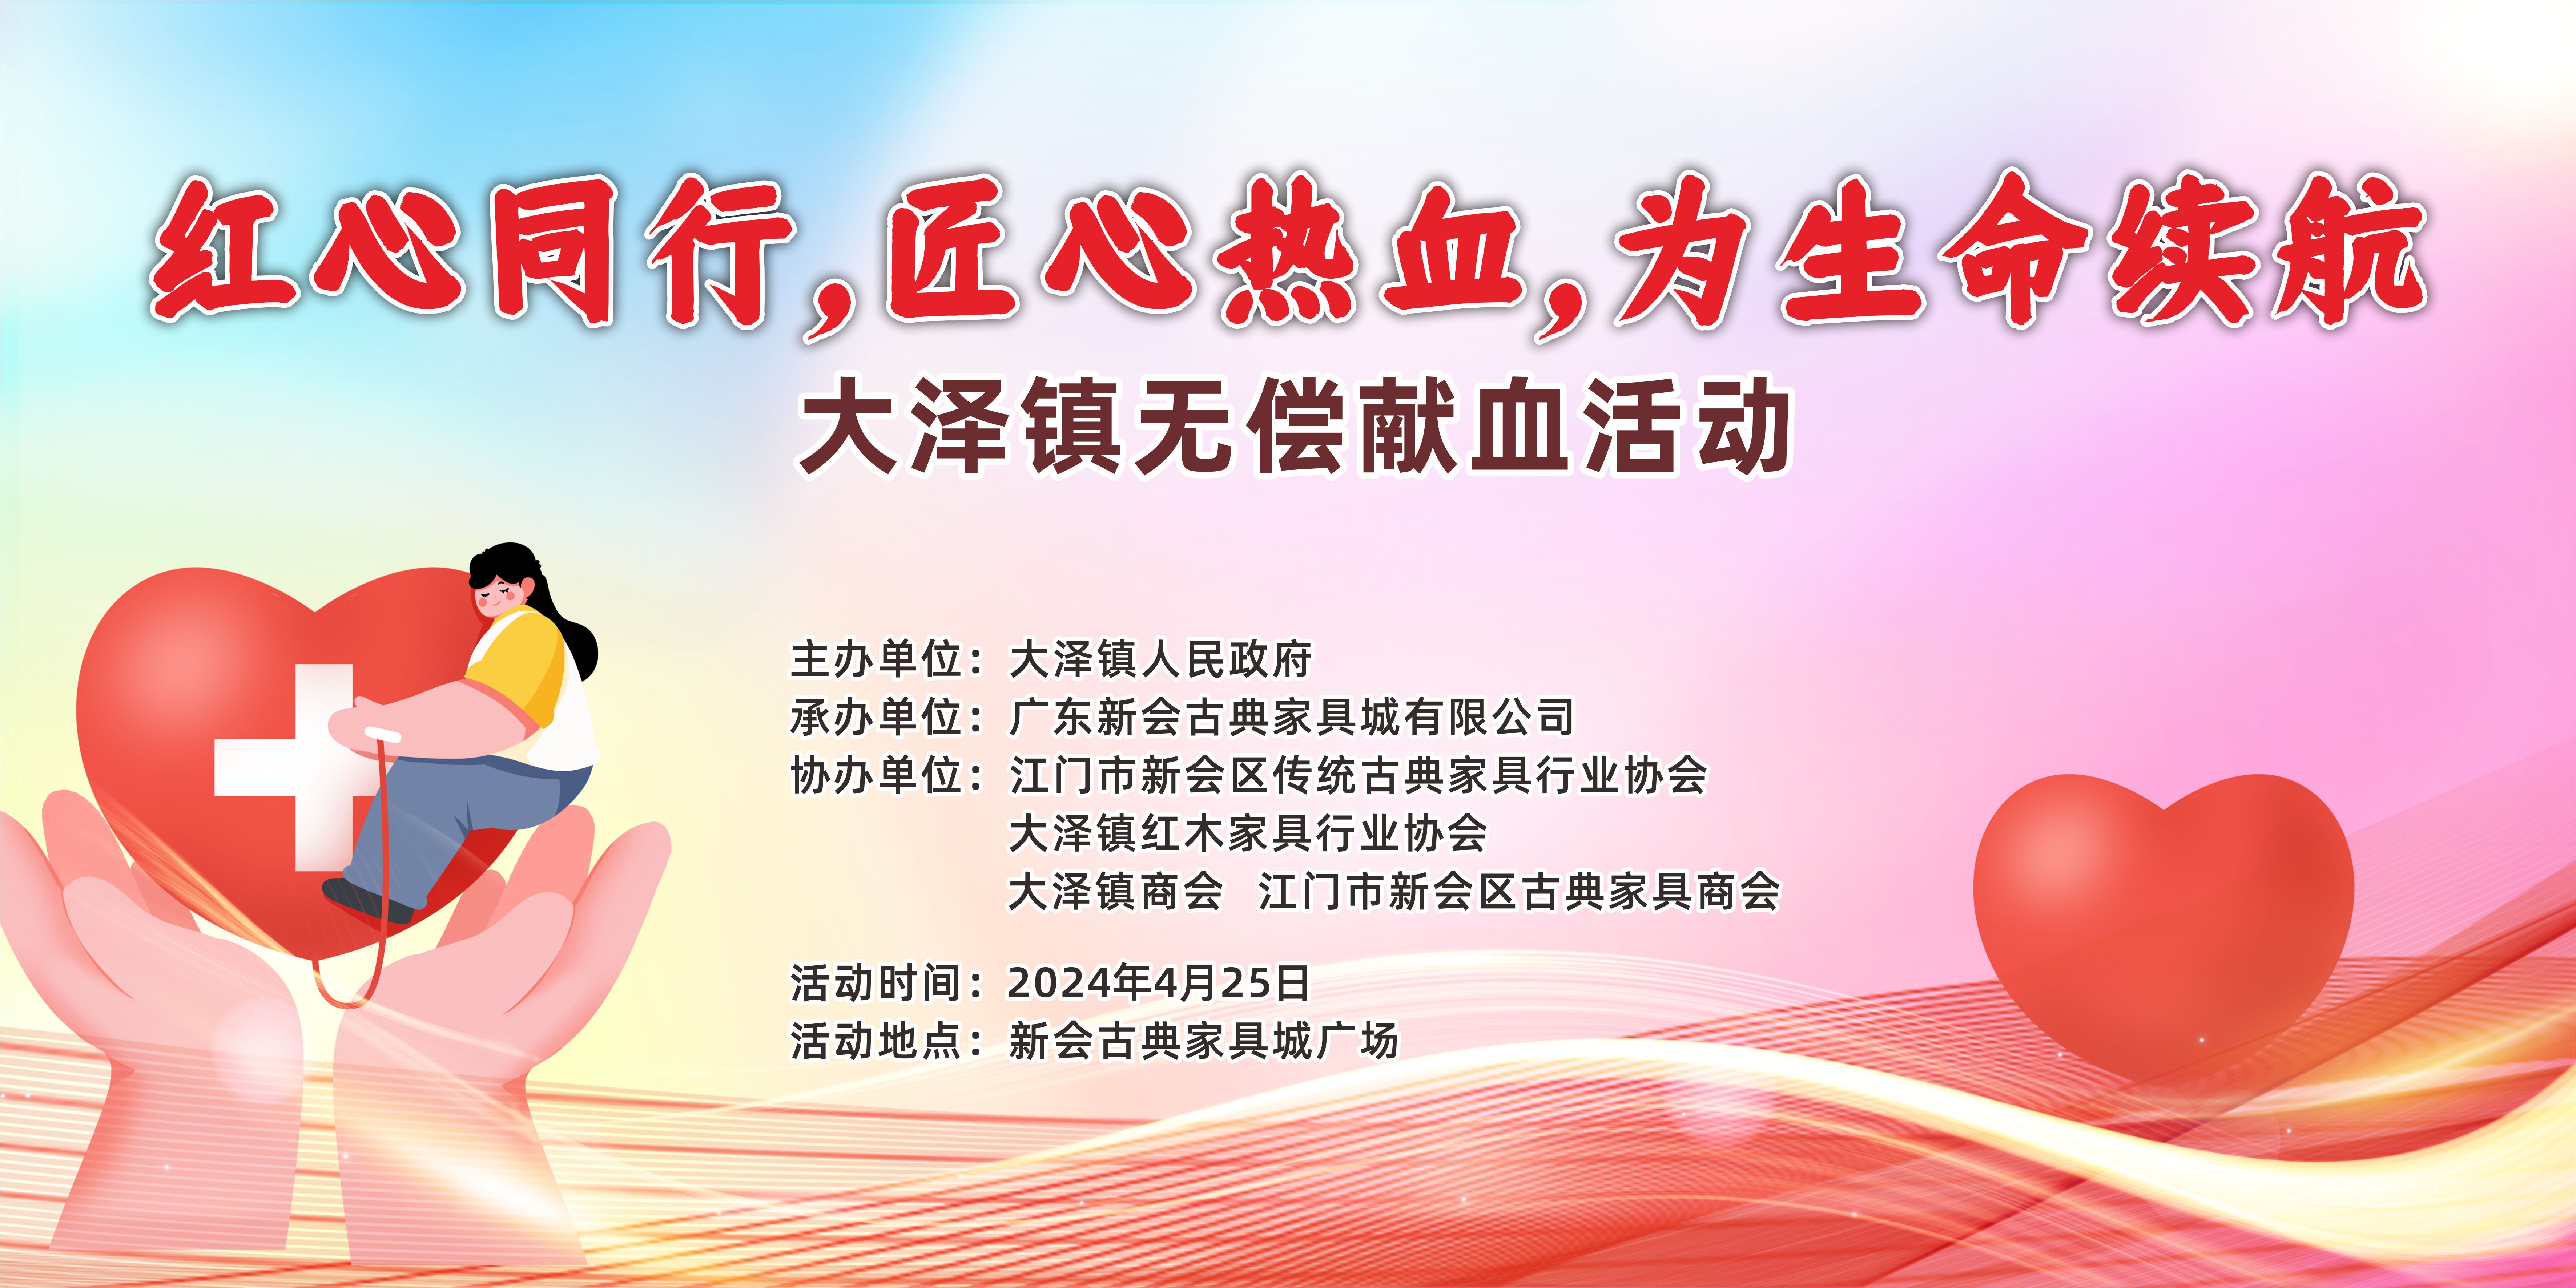 『红心同行 匠心热血 』大泽镇无偿献血活动将在新会古典家具城举行。